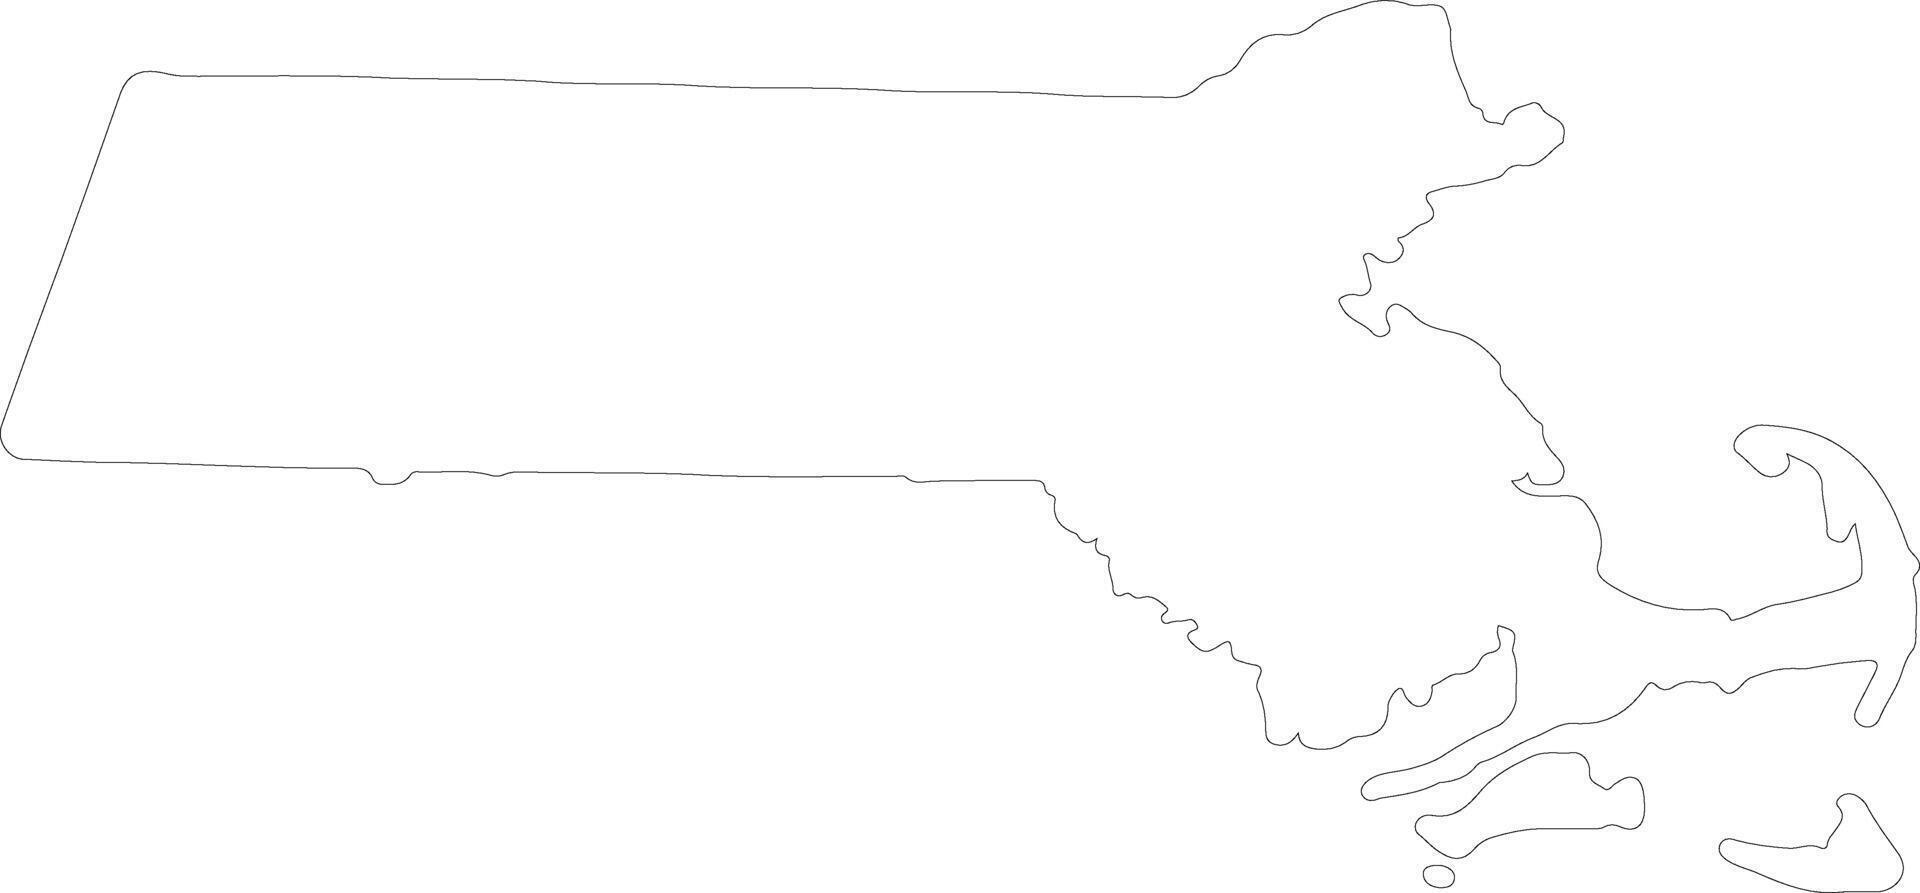 Massachusetts unito stati di America schema carta geografica vettore